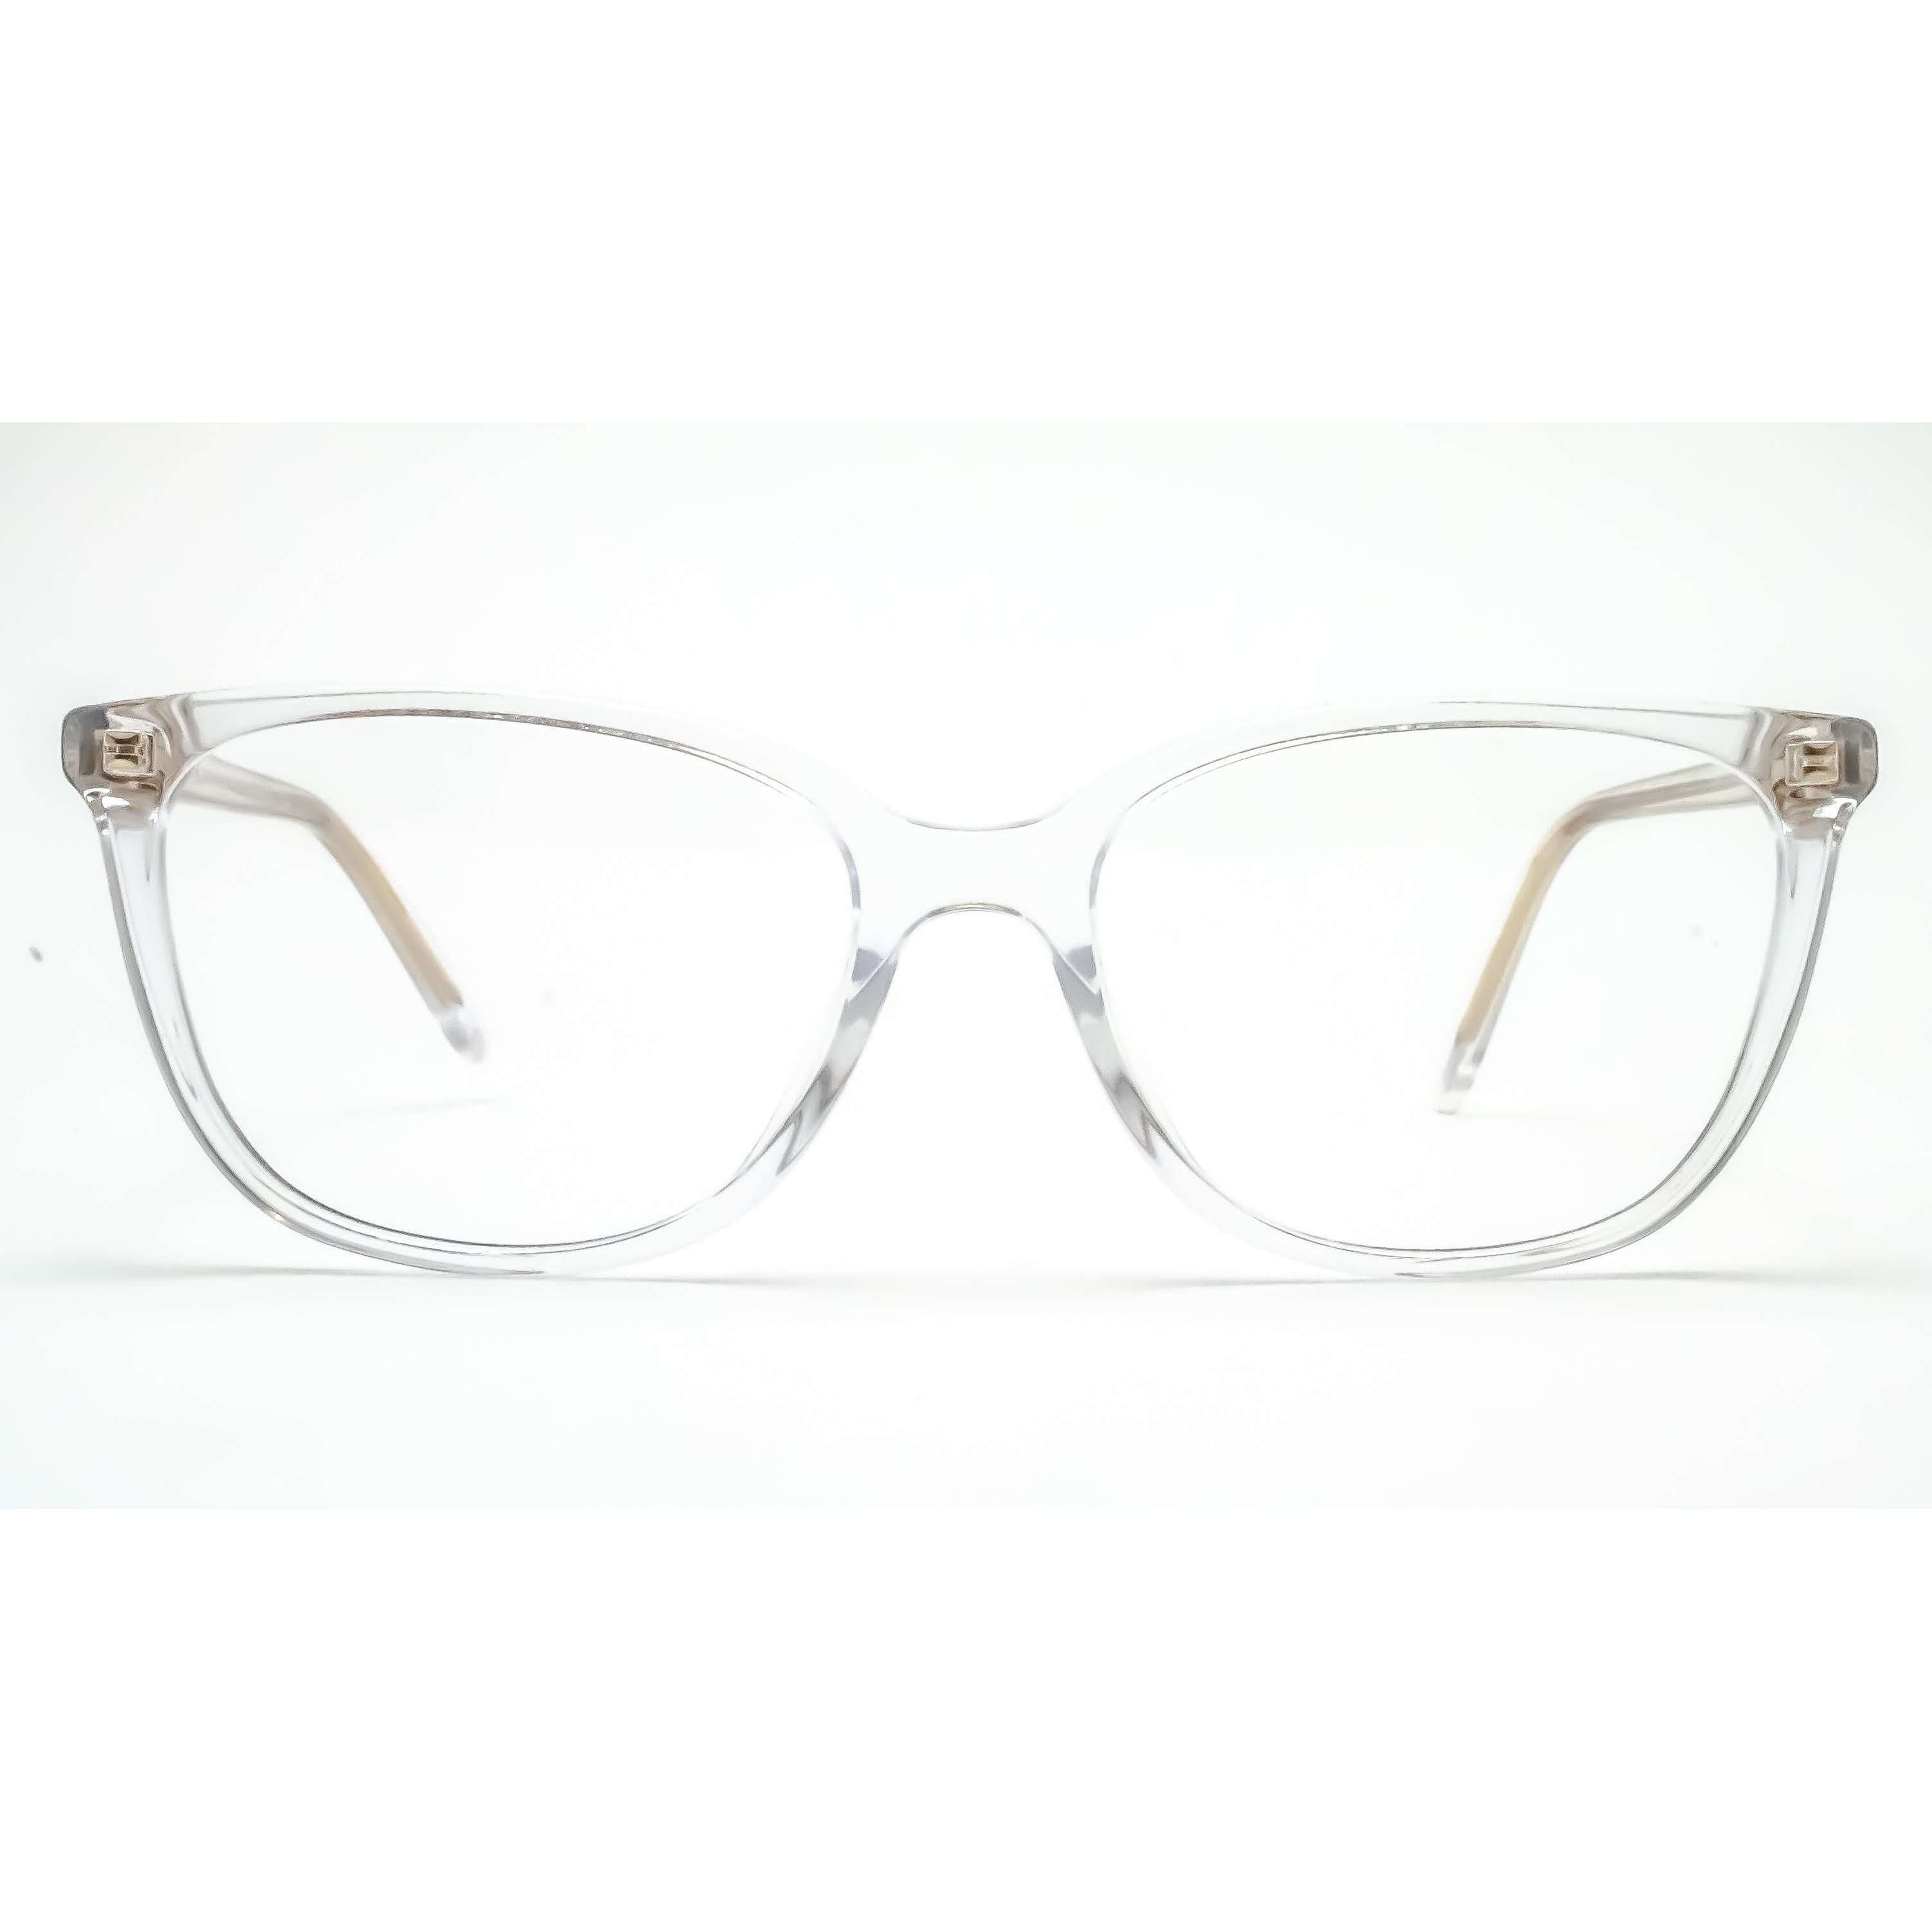 Michael Kors Santa Clara Designer Glasses